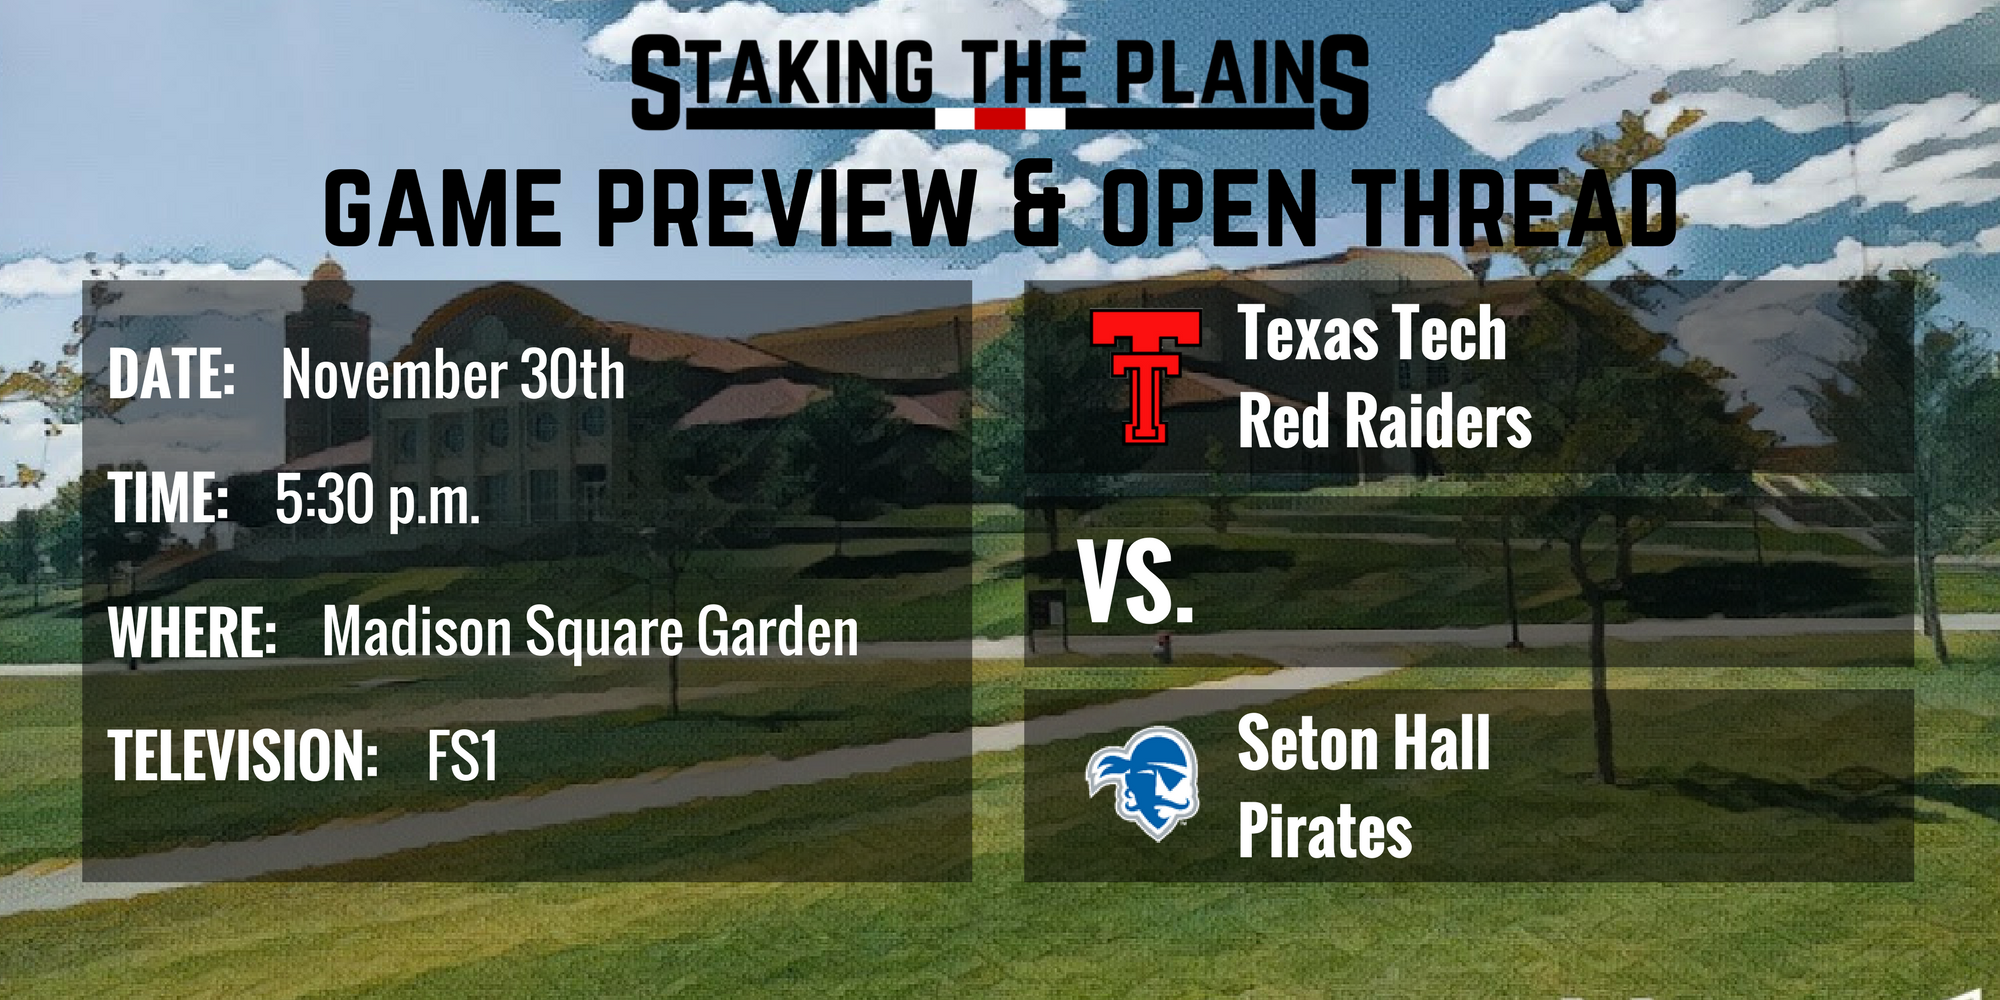 Game Preview & Open Thread: Texas Tech vs. Seton Hall